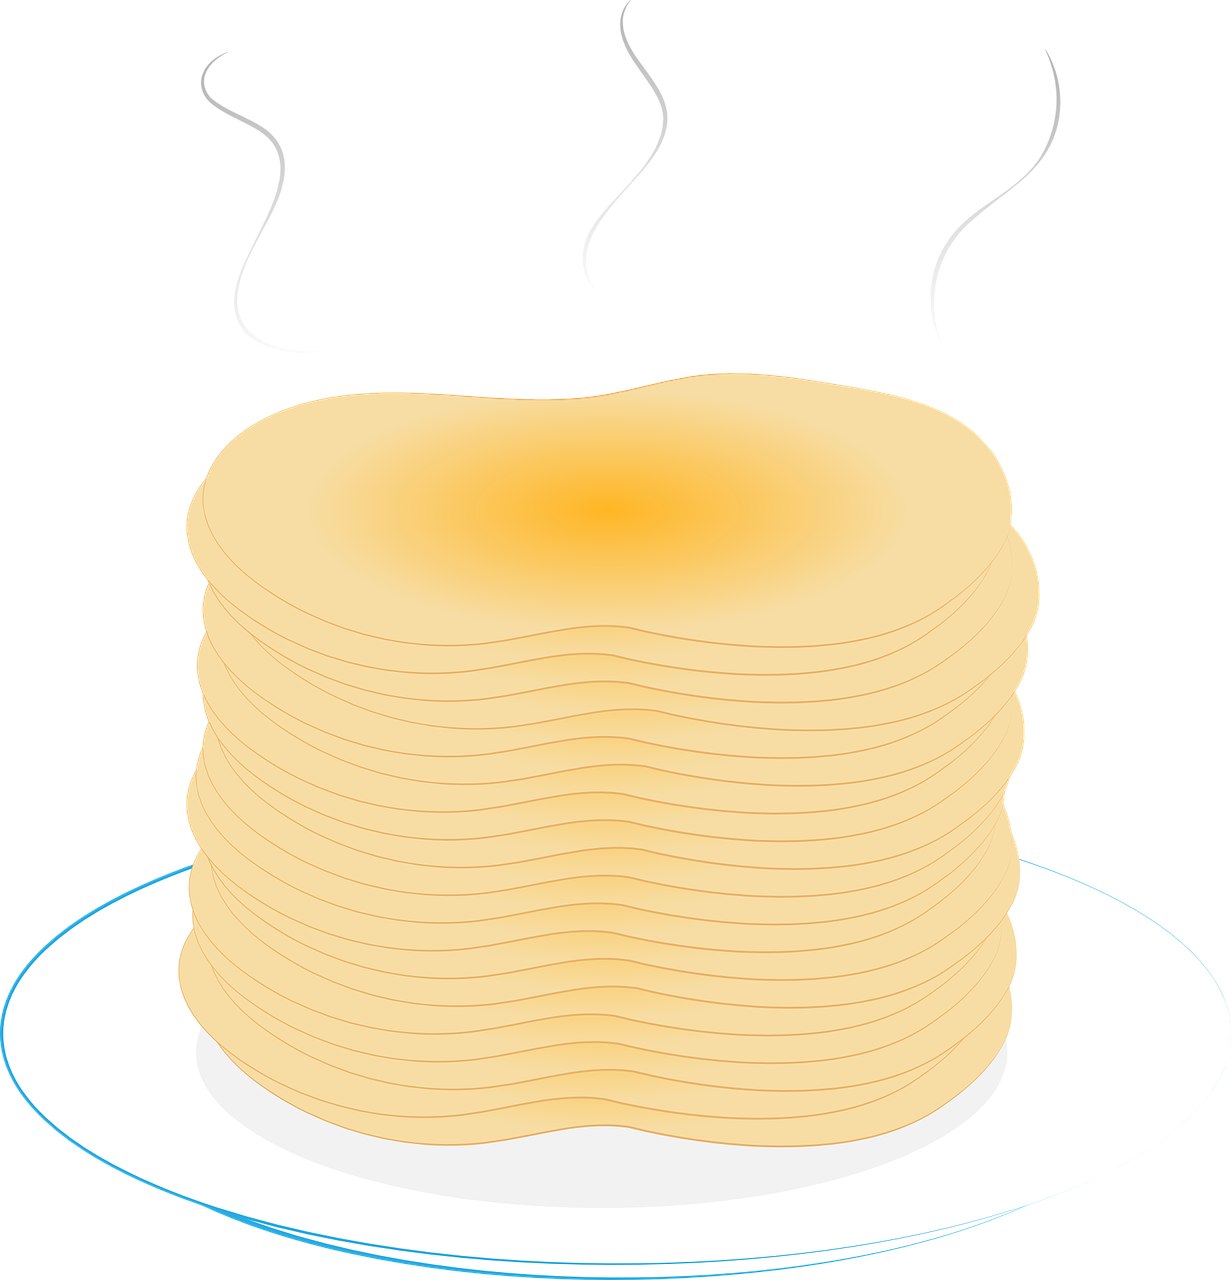 Lemon-ricotta Pancakes